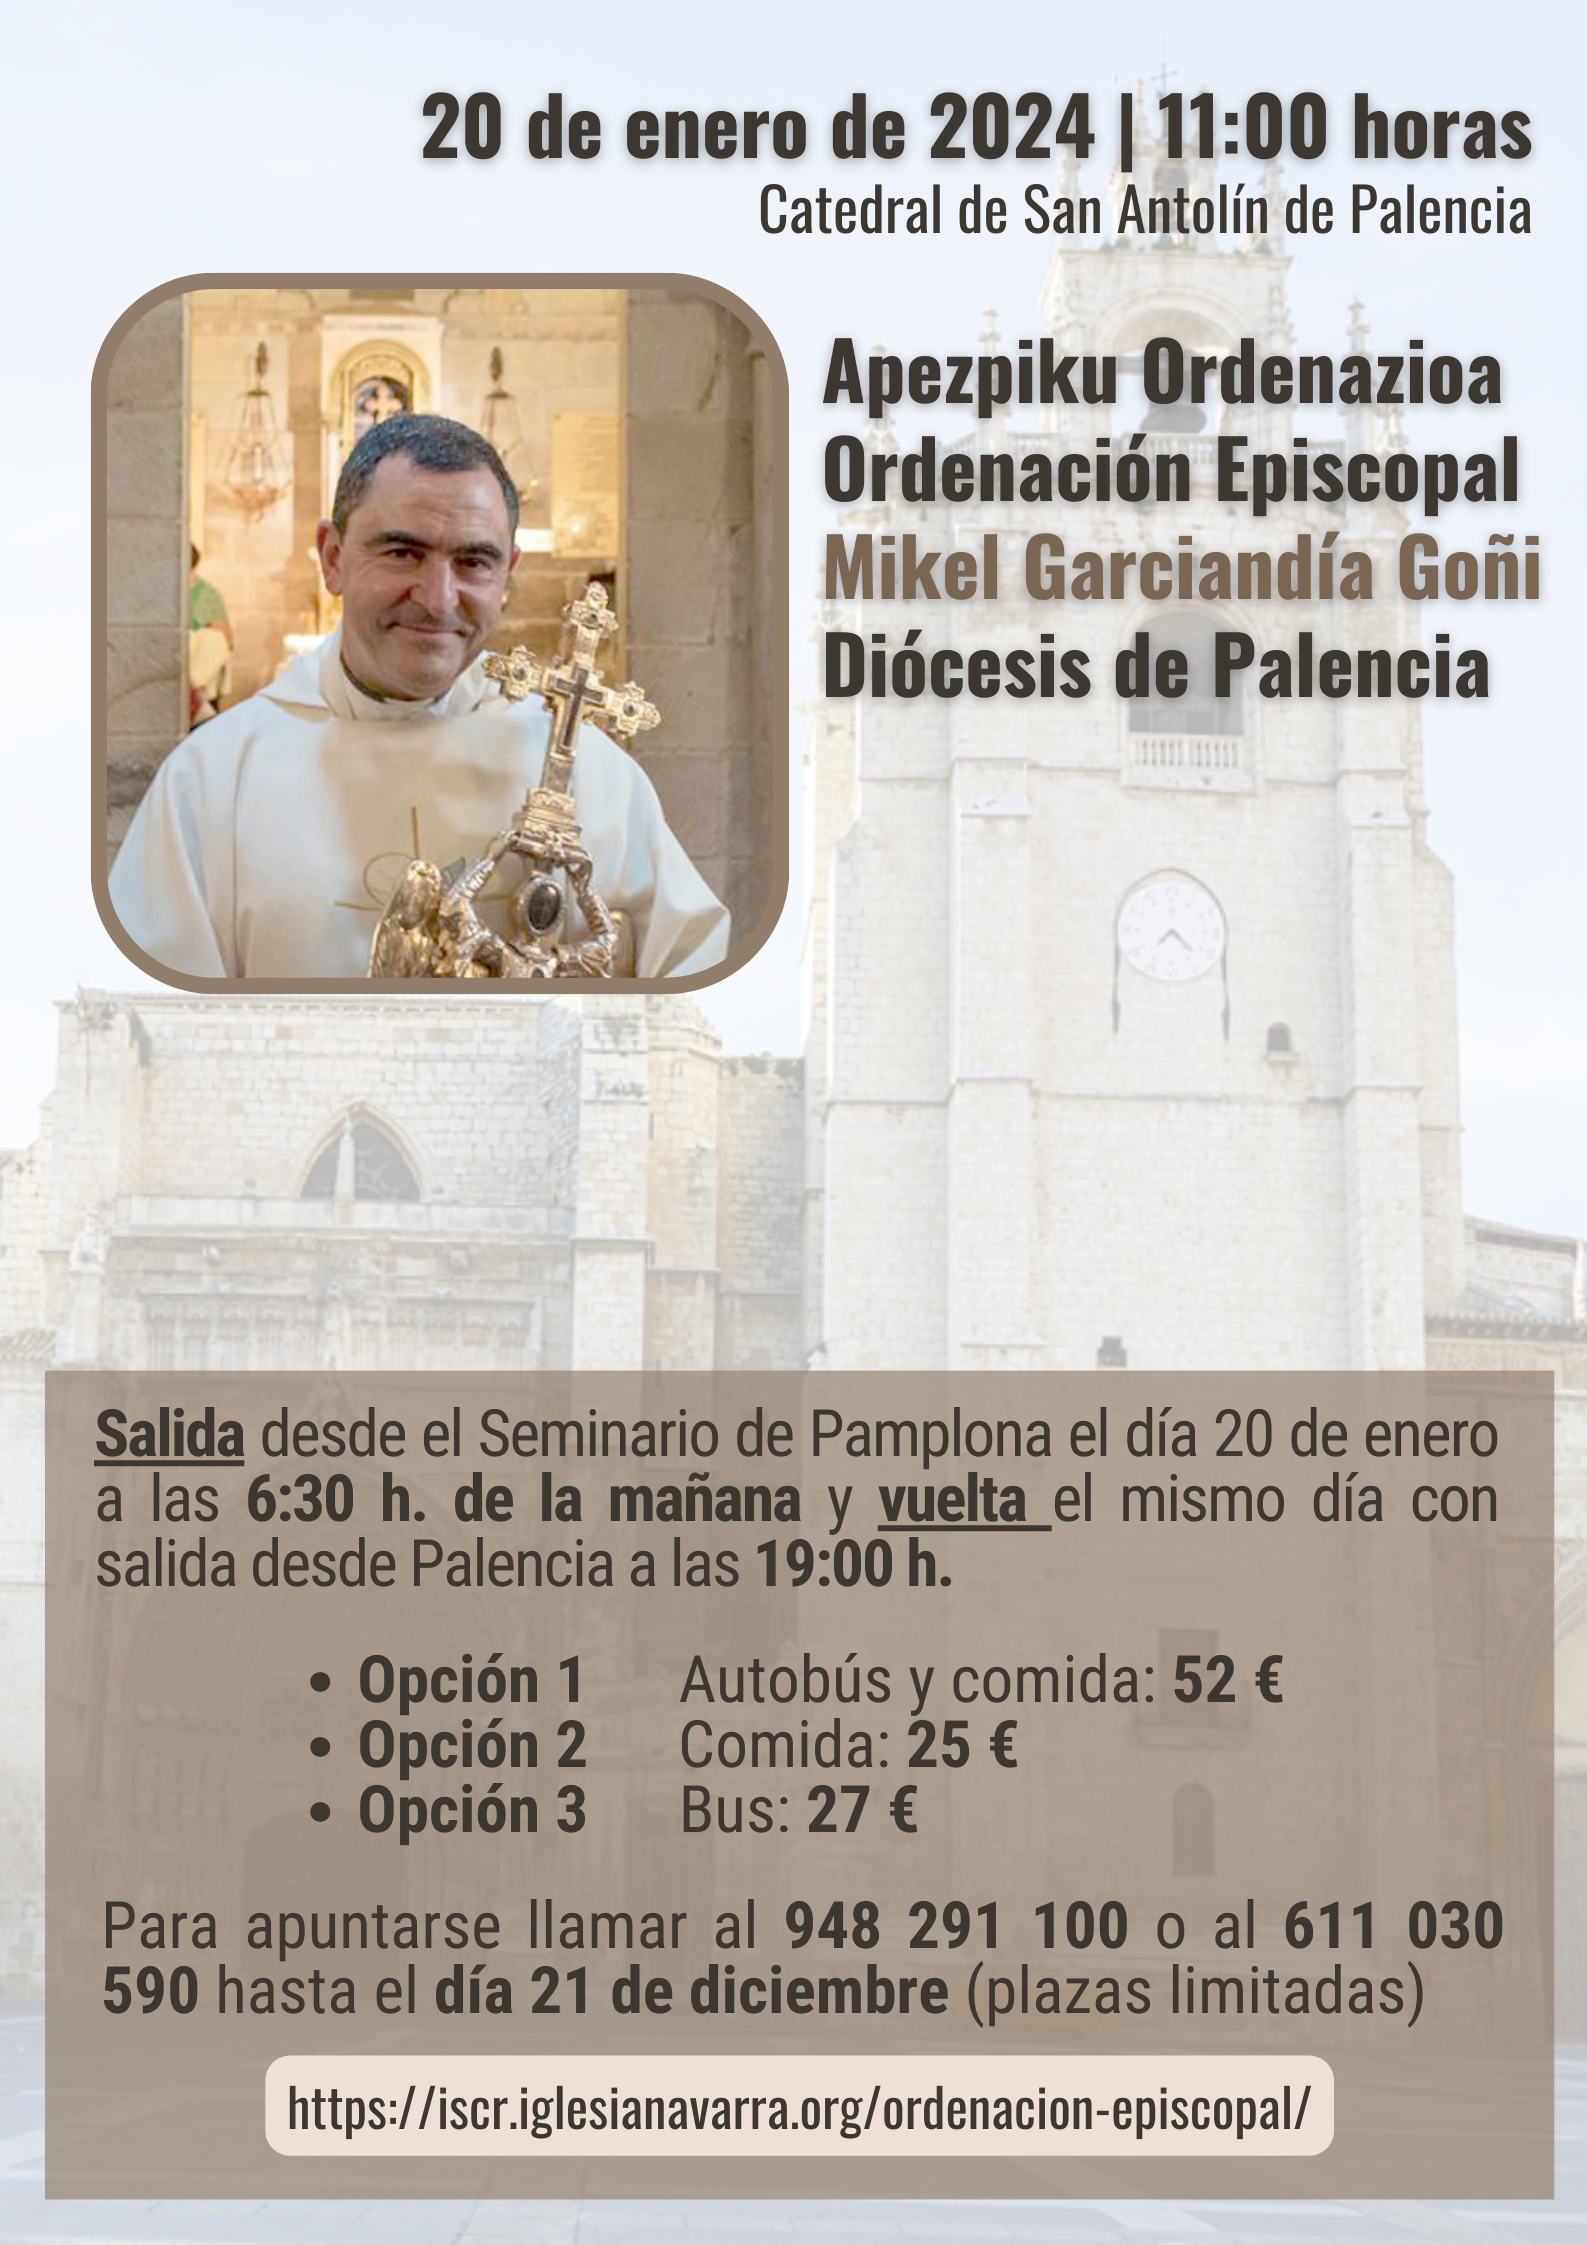 El Director del ISCR nuevo Obispo de Palencia